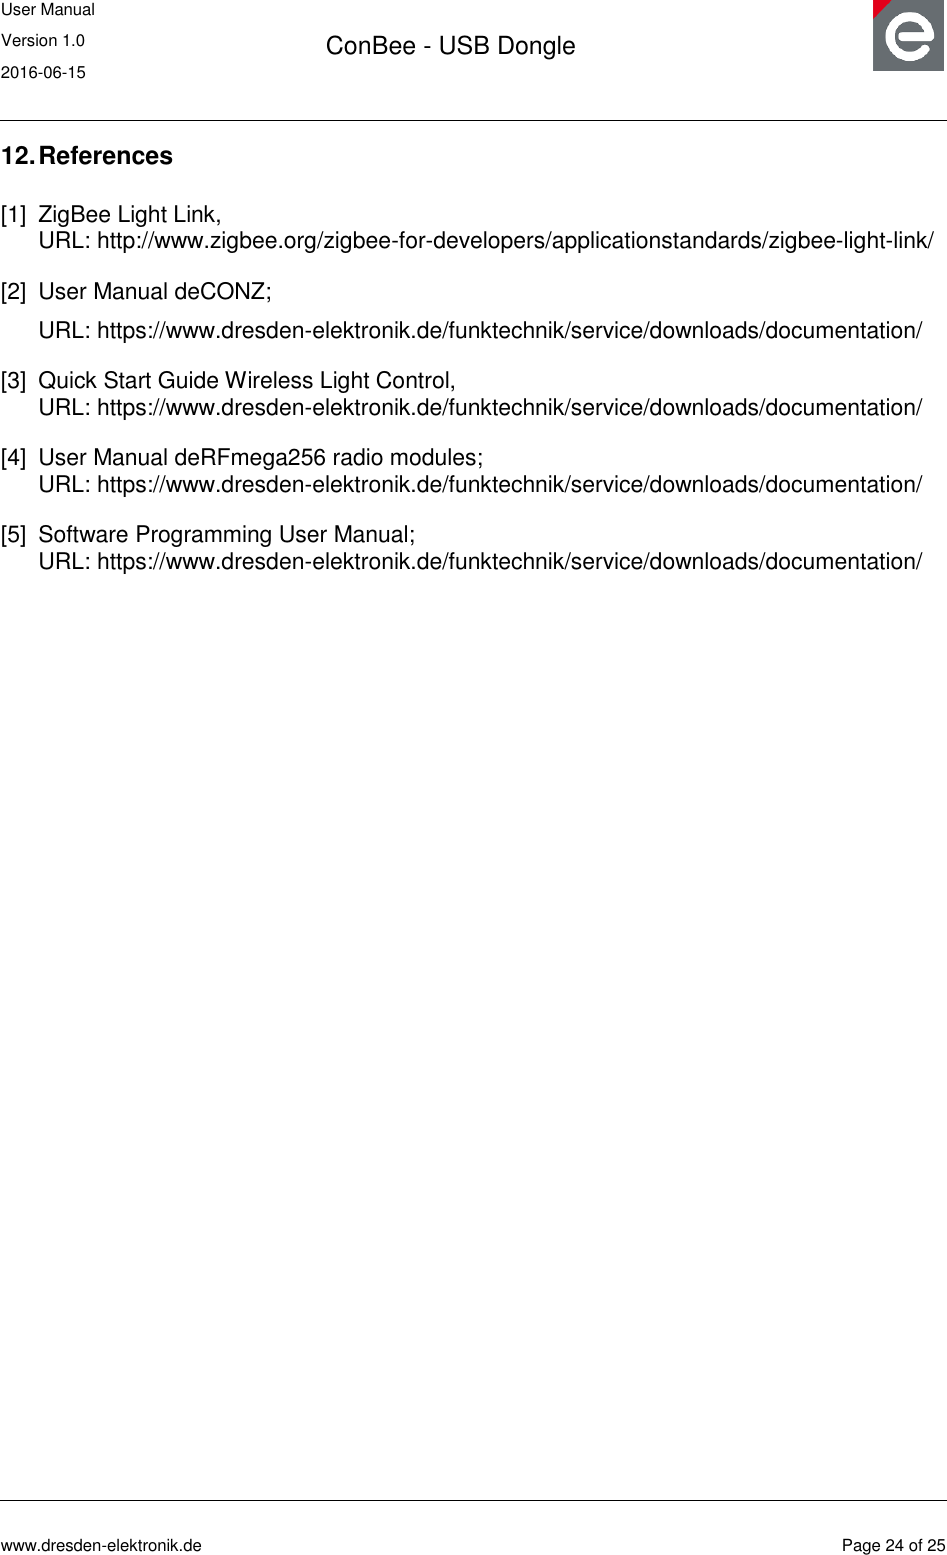 User Manual Version 1.0 2016-06-15  ConBee - USB Dongle      www.dresden-elektronik.de  Page 24 of 25  12. References [1] ZigBee Light Link,  URL: http://www.zigbee.org/zigbee-for-developers/applicationstandards/zigbee-light-link/ [2] User Manual deCONZ; URL: https://www.dresden-elektronik.de/funktechnik/service/downloads/documentation/ [3] Quick Start Guide Wireless Light Control,  URL: https://www.dresden-elektronik.de/funktechnik/service/downloads/documentation/ [4] User Manual deRFmega256 radio modules;  URL: https://www.dresden-elektronik.de/funktechnik/service/downloads/documentation/ [5] Software Programming User Manual;  URL: https://www.dresden-elektronik.de/funktechnik/service/downloads/documentation/  